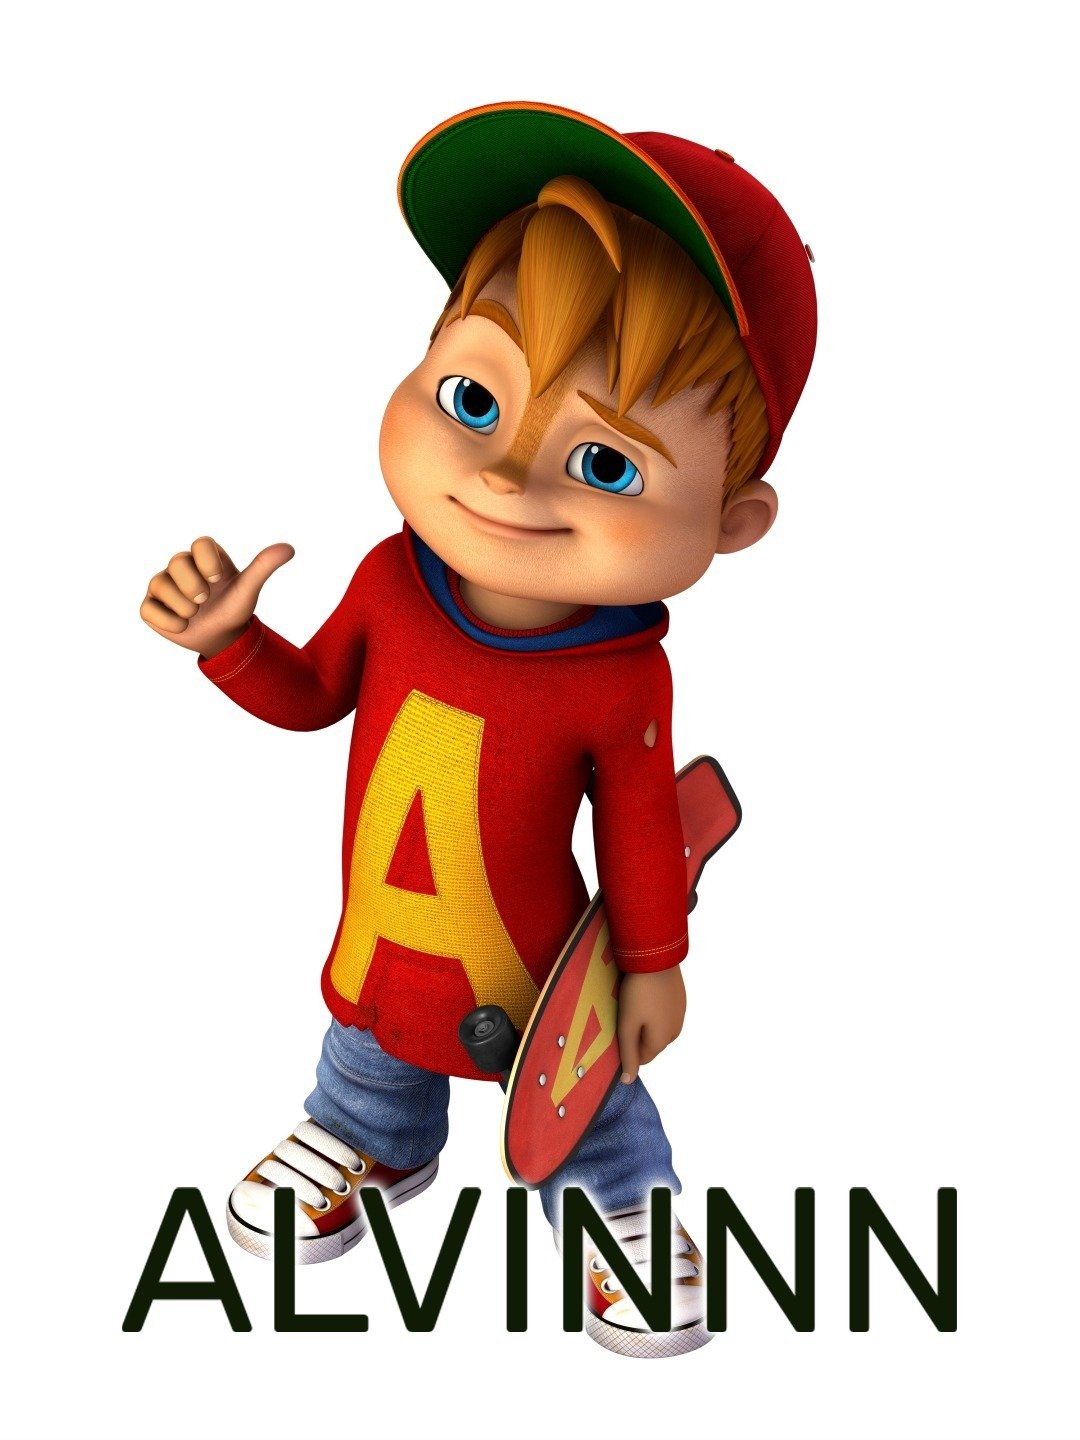 Alvinnn and the chipmunks alvin